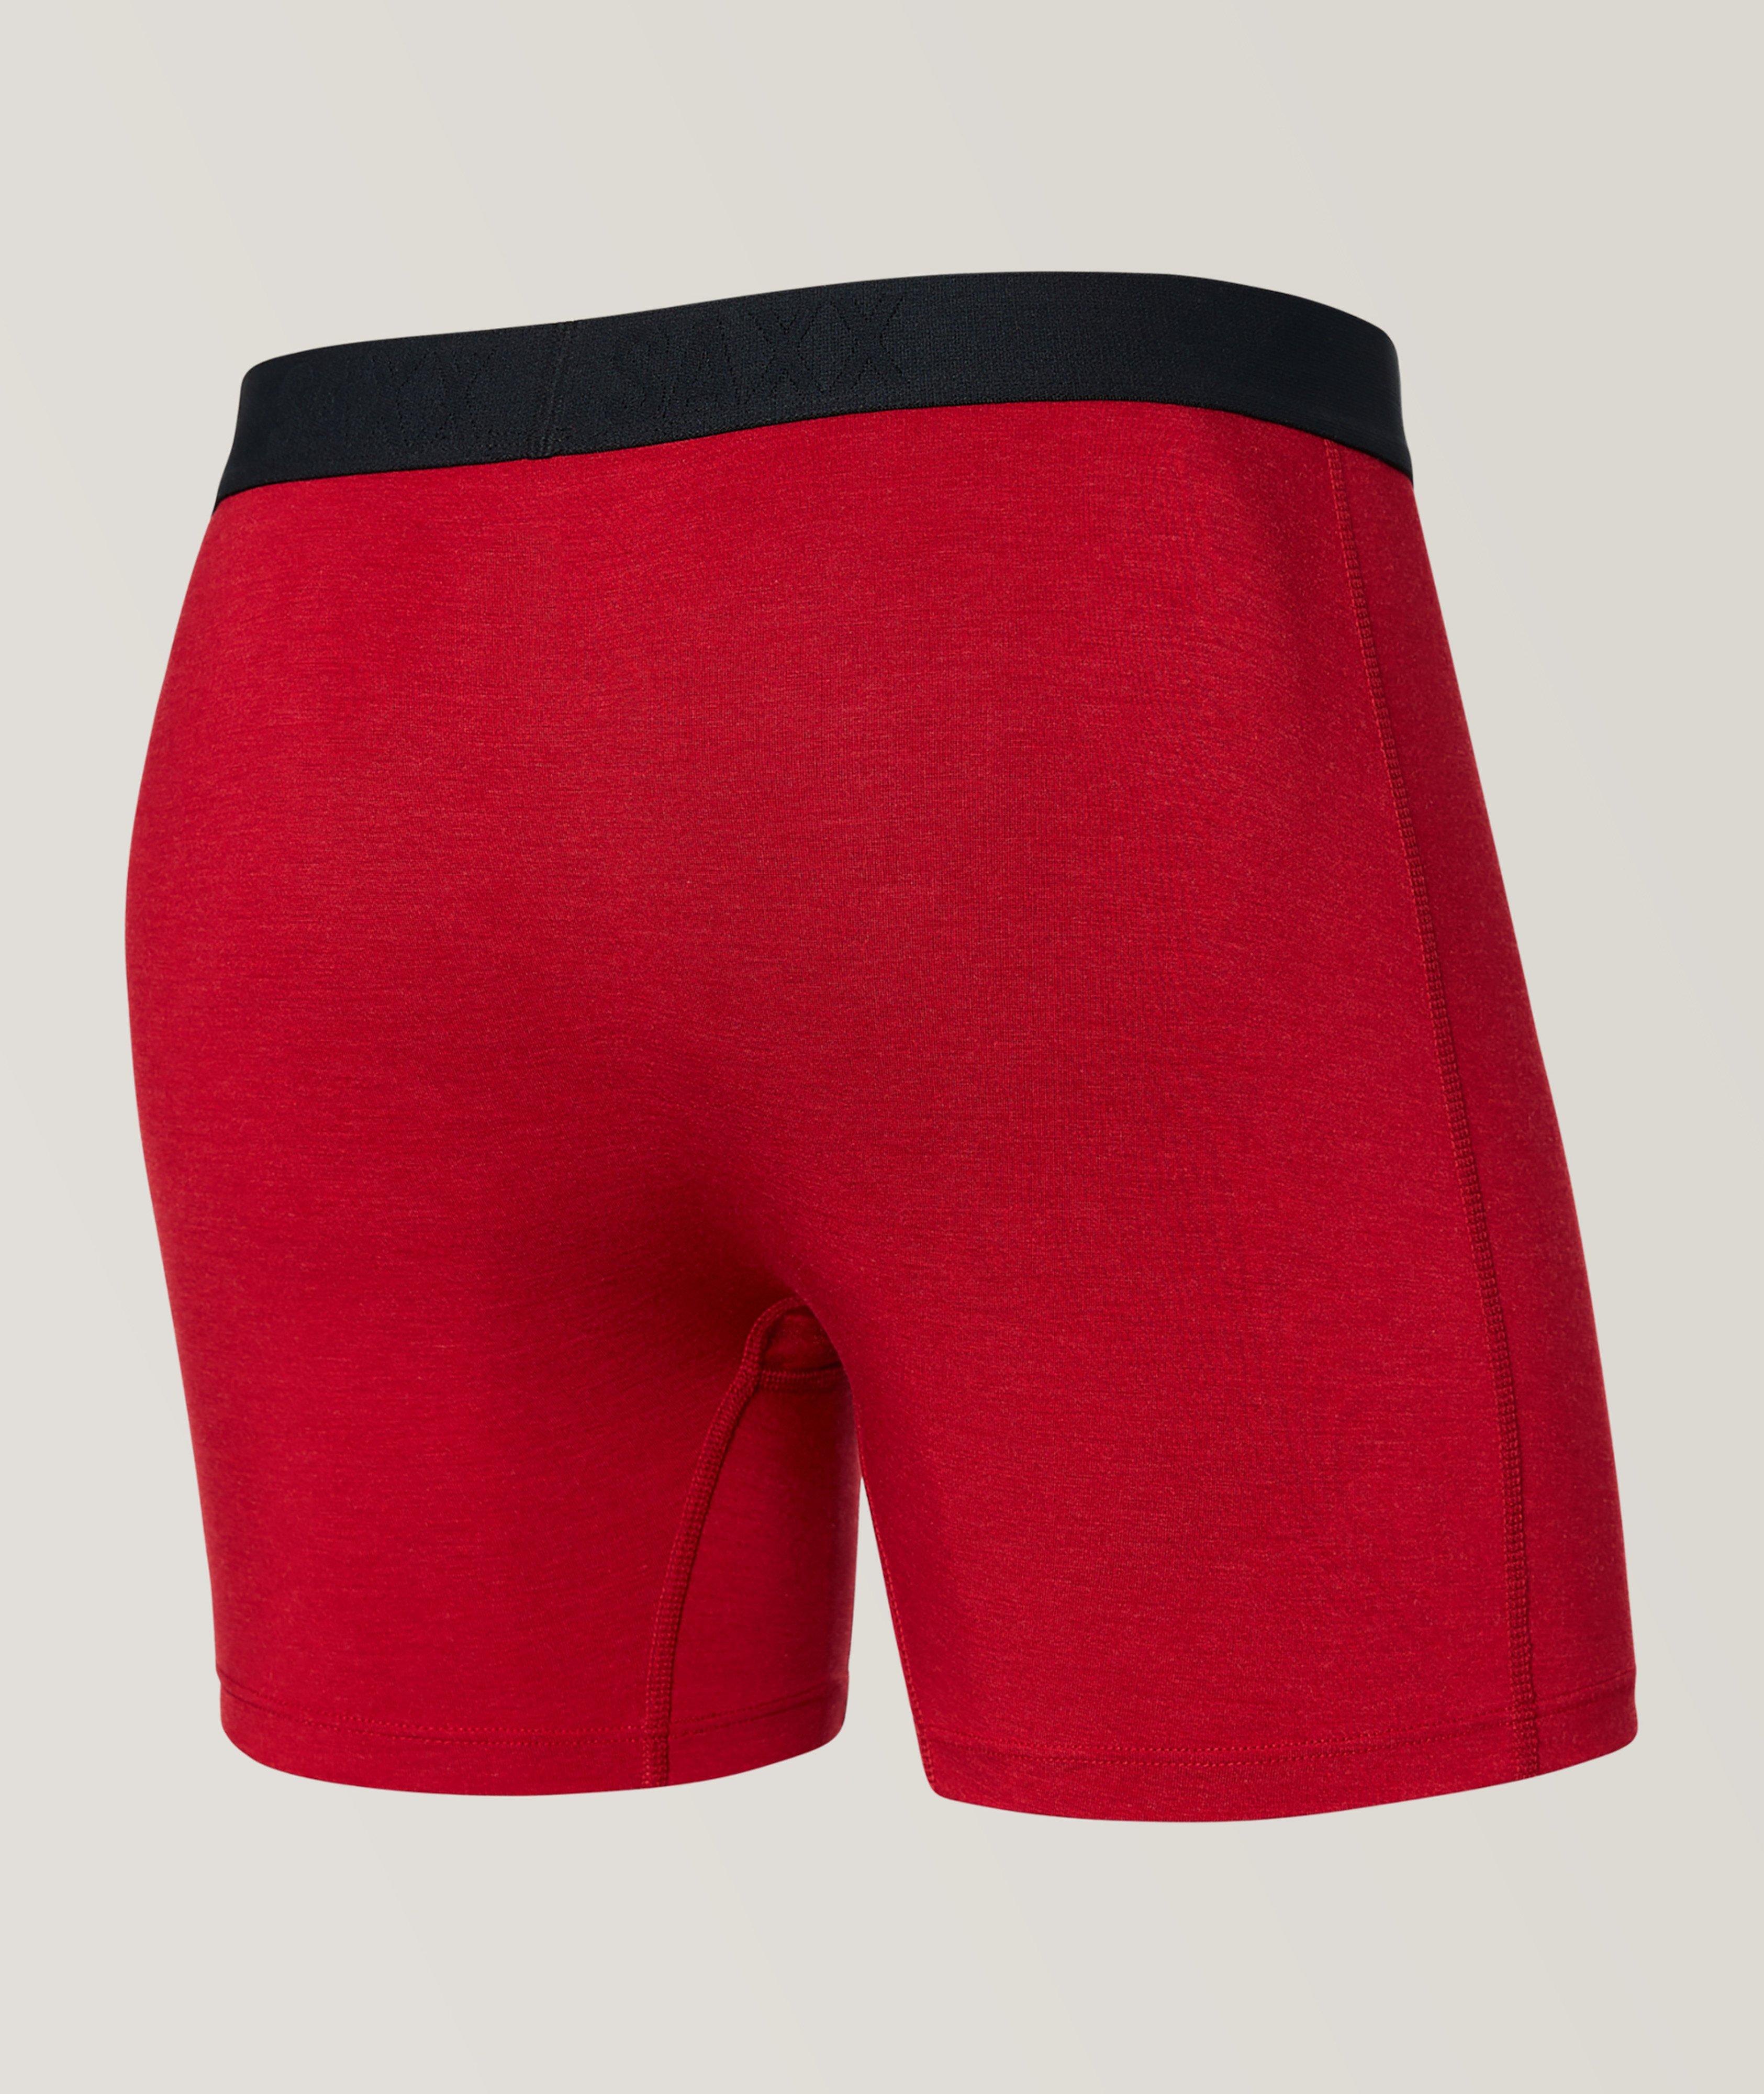 SAXX Men's Underwear - Ultra Super Soft Boxer Brief Fly 3 Pack